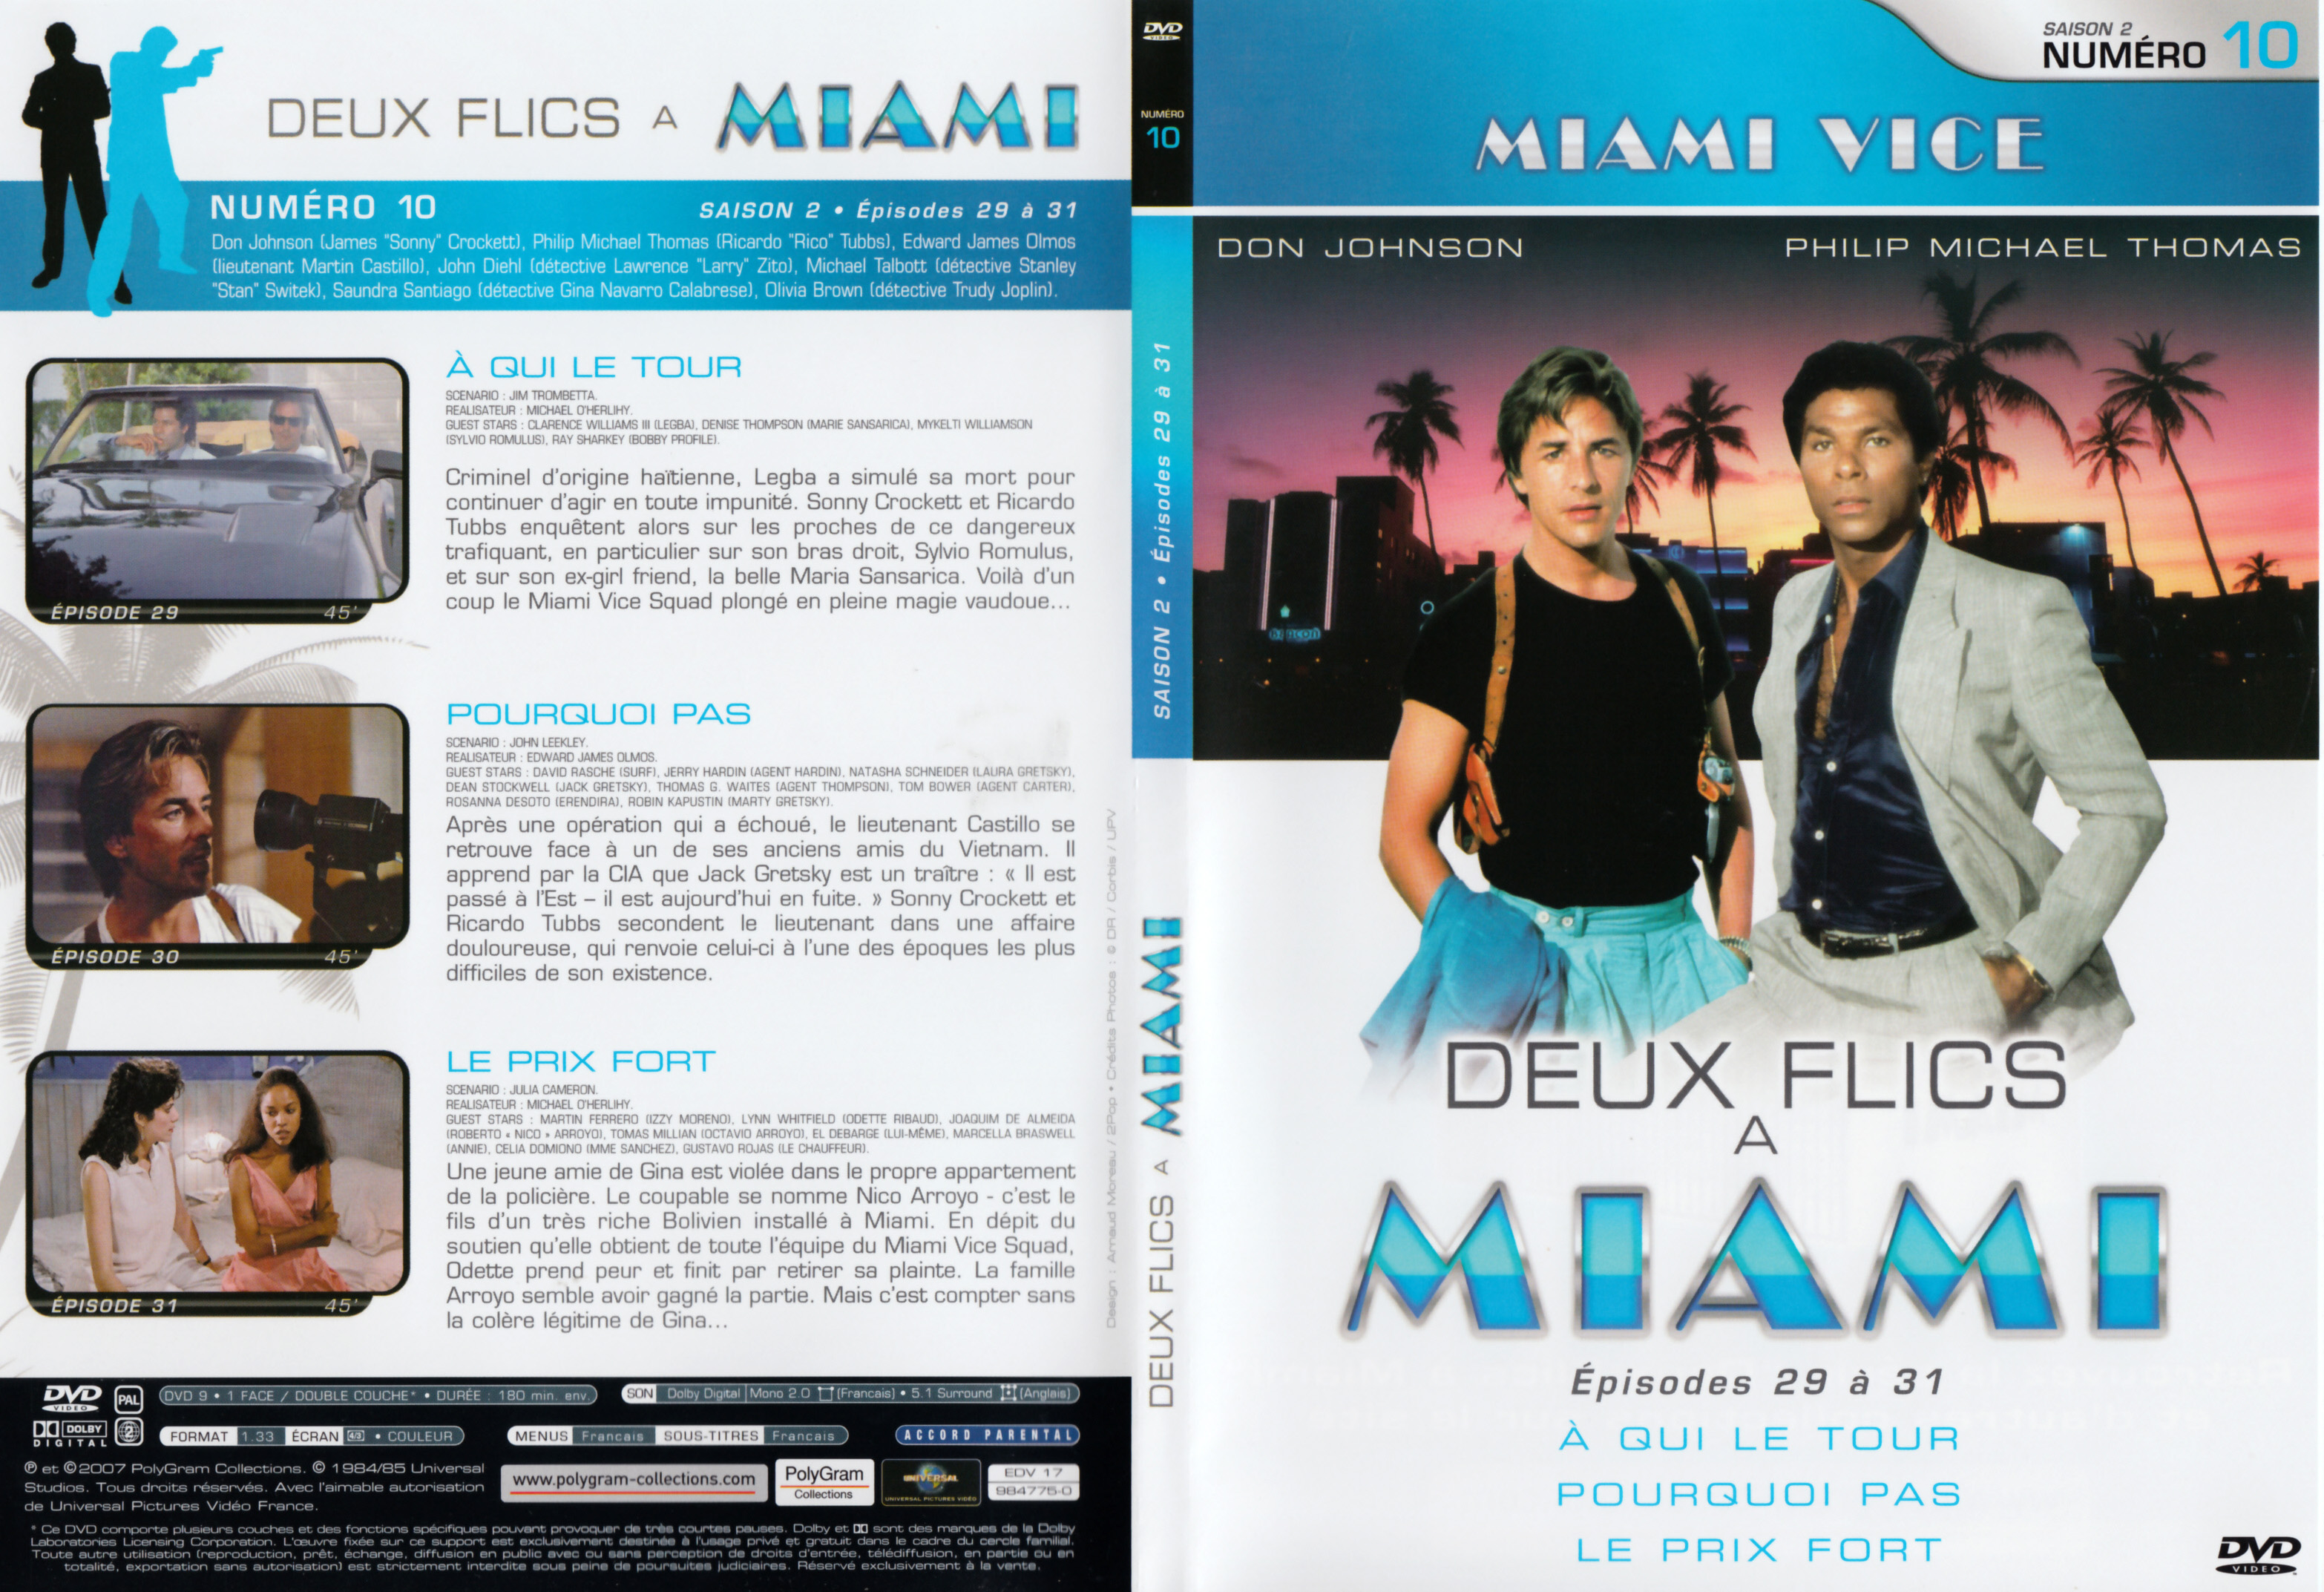 Jaquette DVD Deux flics  Miami Saison 2 vol 10